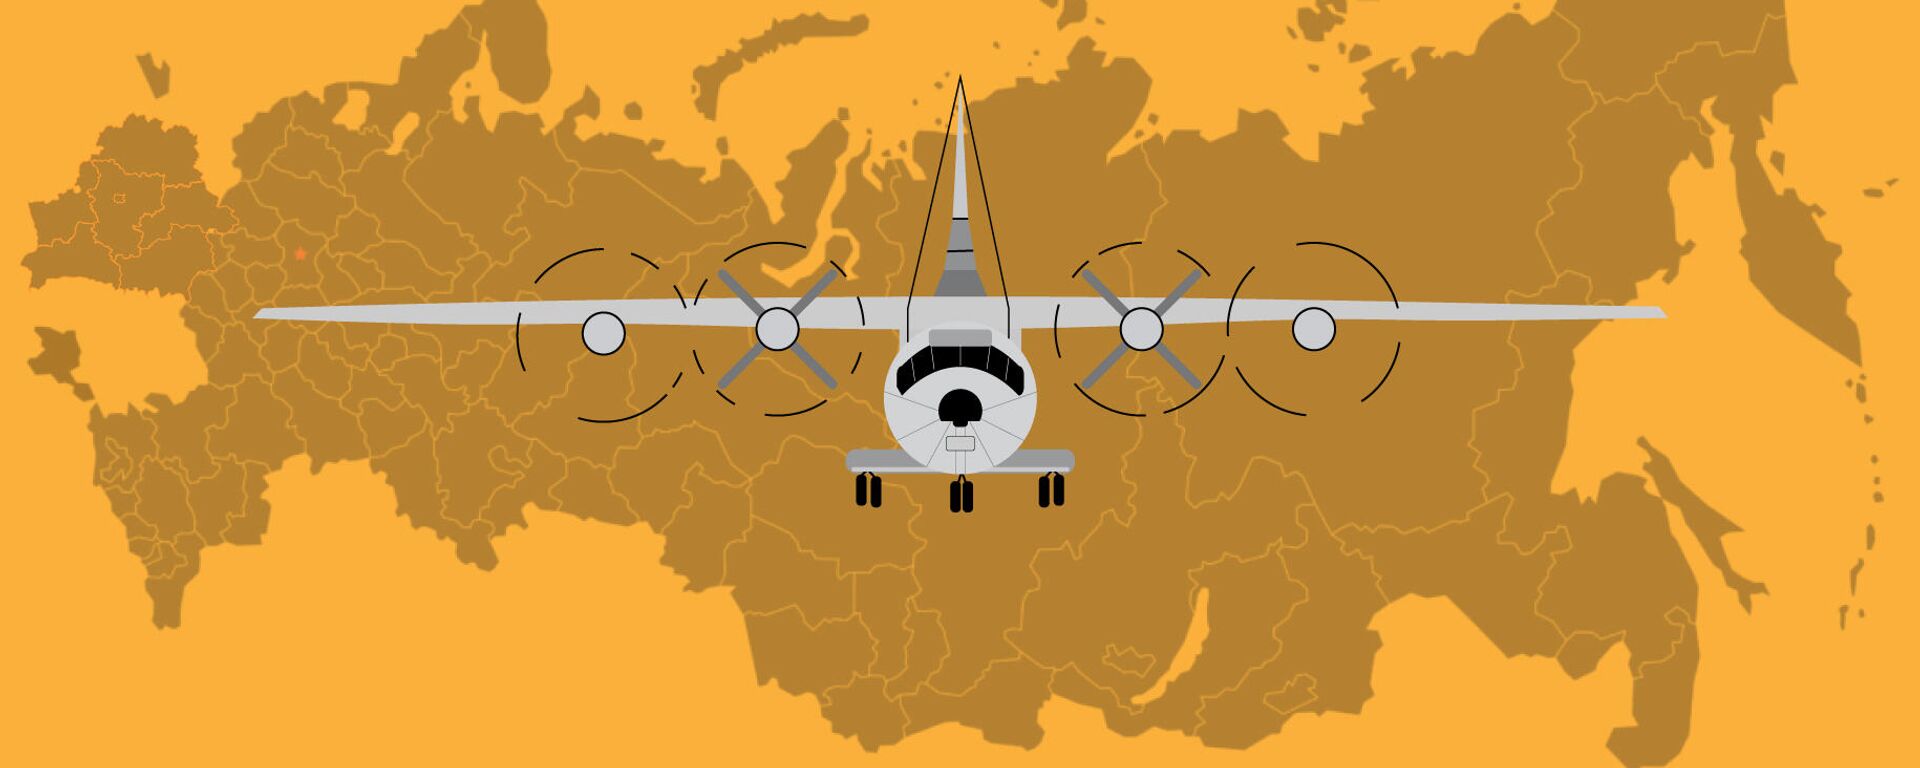 Улетел навсегда: последний маршрут Ан-12, разбившегося под Иркутском - Sputnik Беларусь, 1920, 04.11.2021